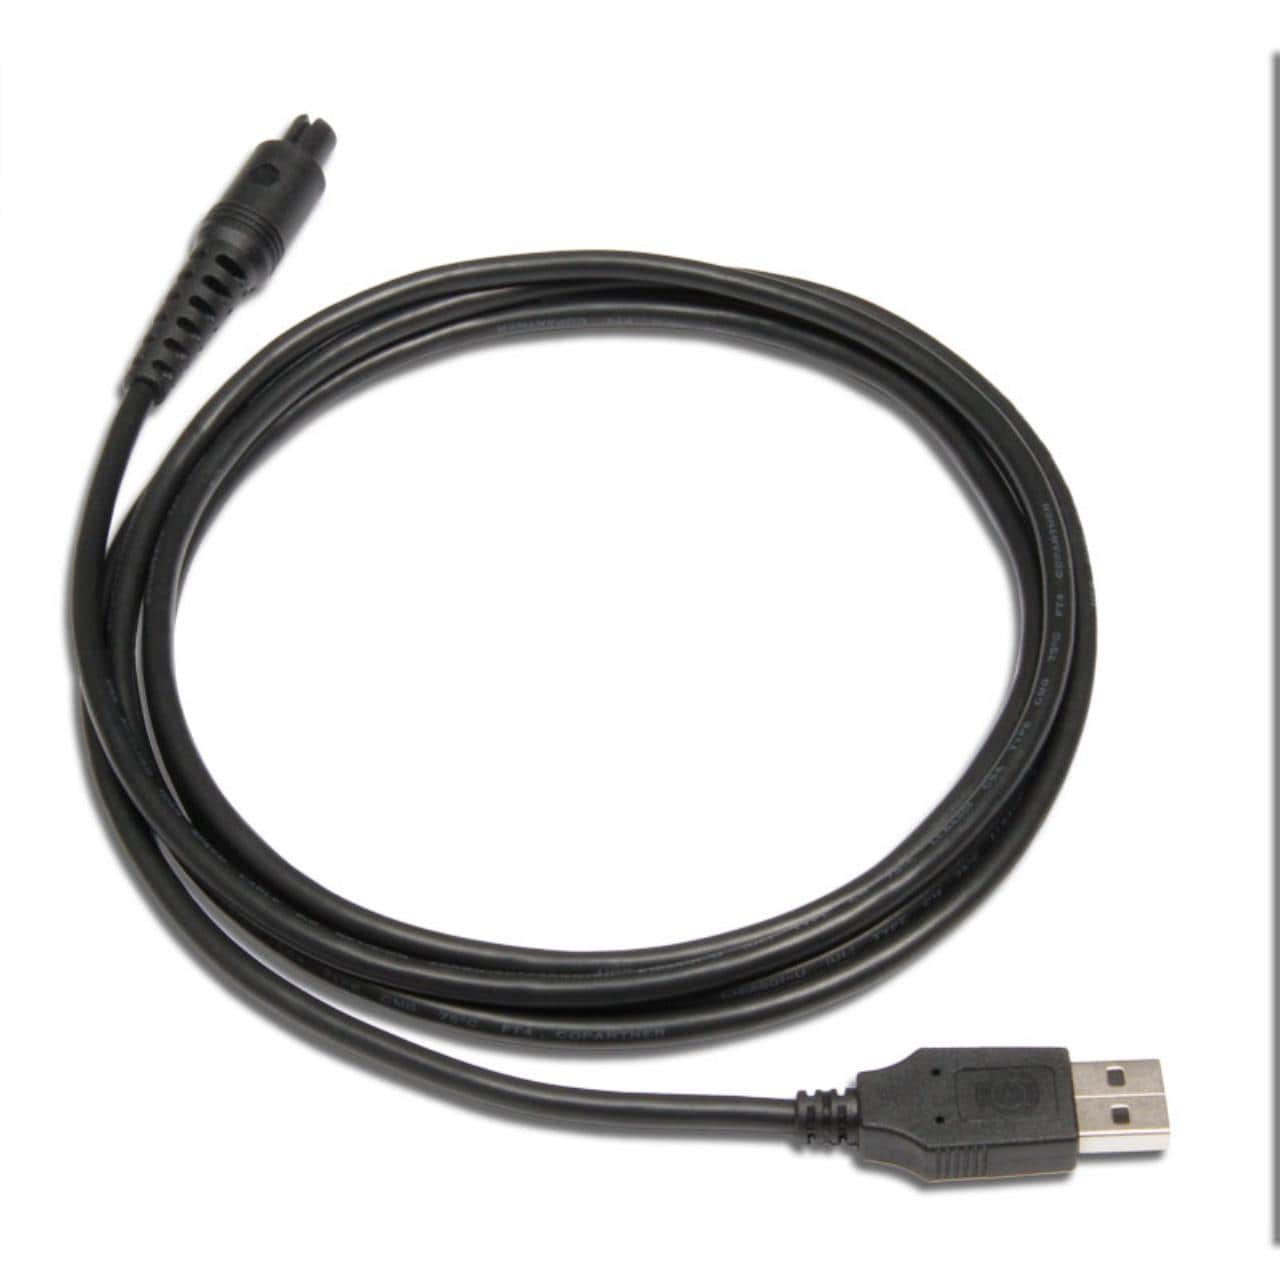 USB-kabel til Unigo